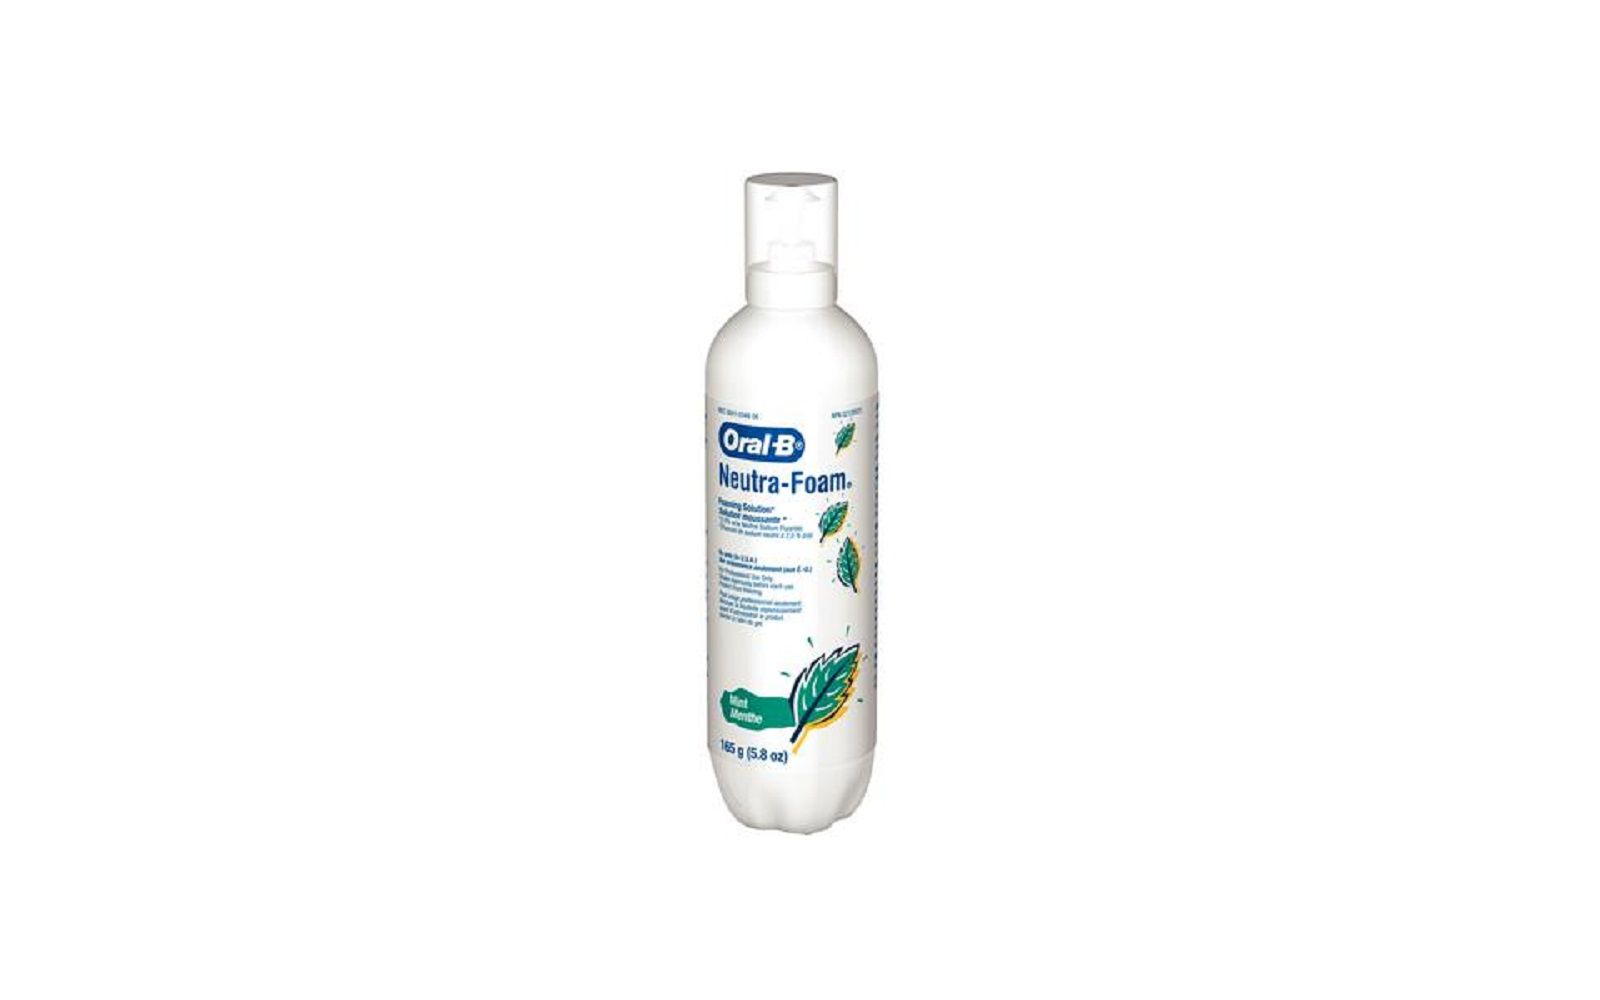 Oral-b® neutra-foam® fluoride foaming solution – mint, 5. 8 oz bottle